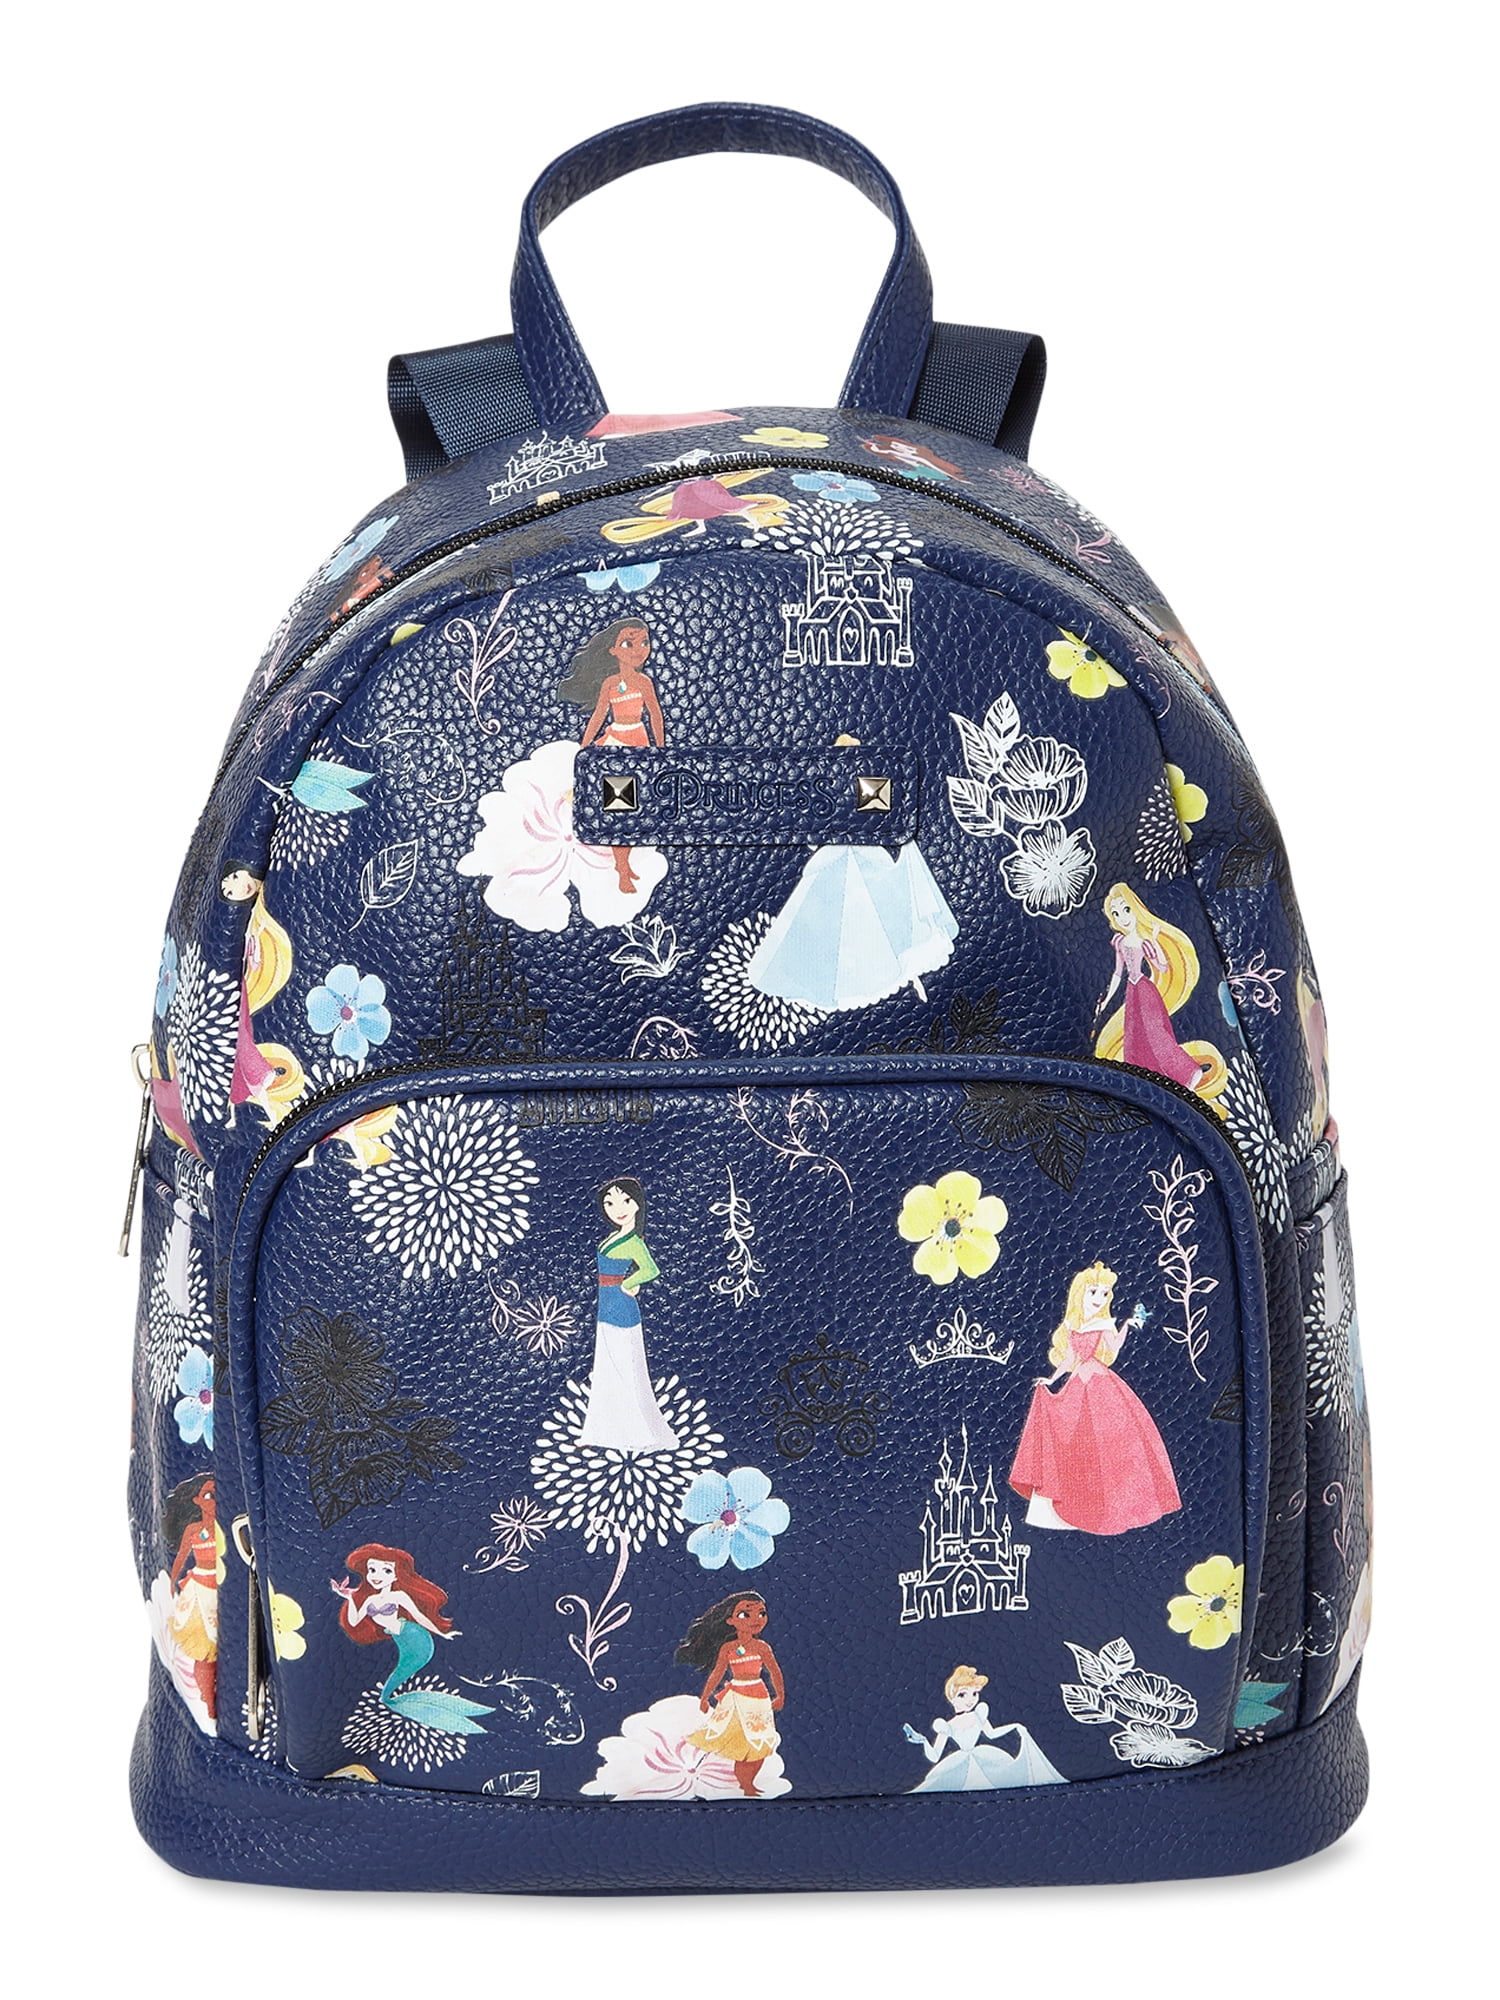 Disney Princess Disney Princess Printed Mini Backpack